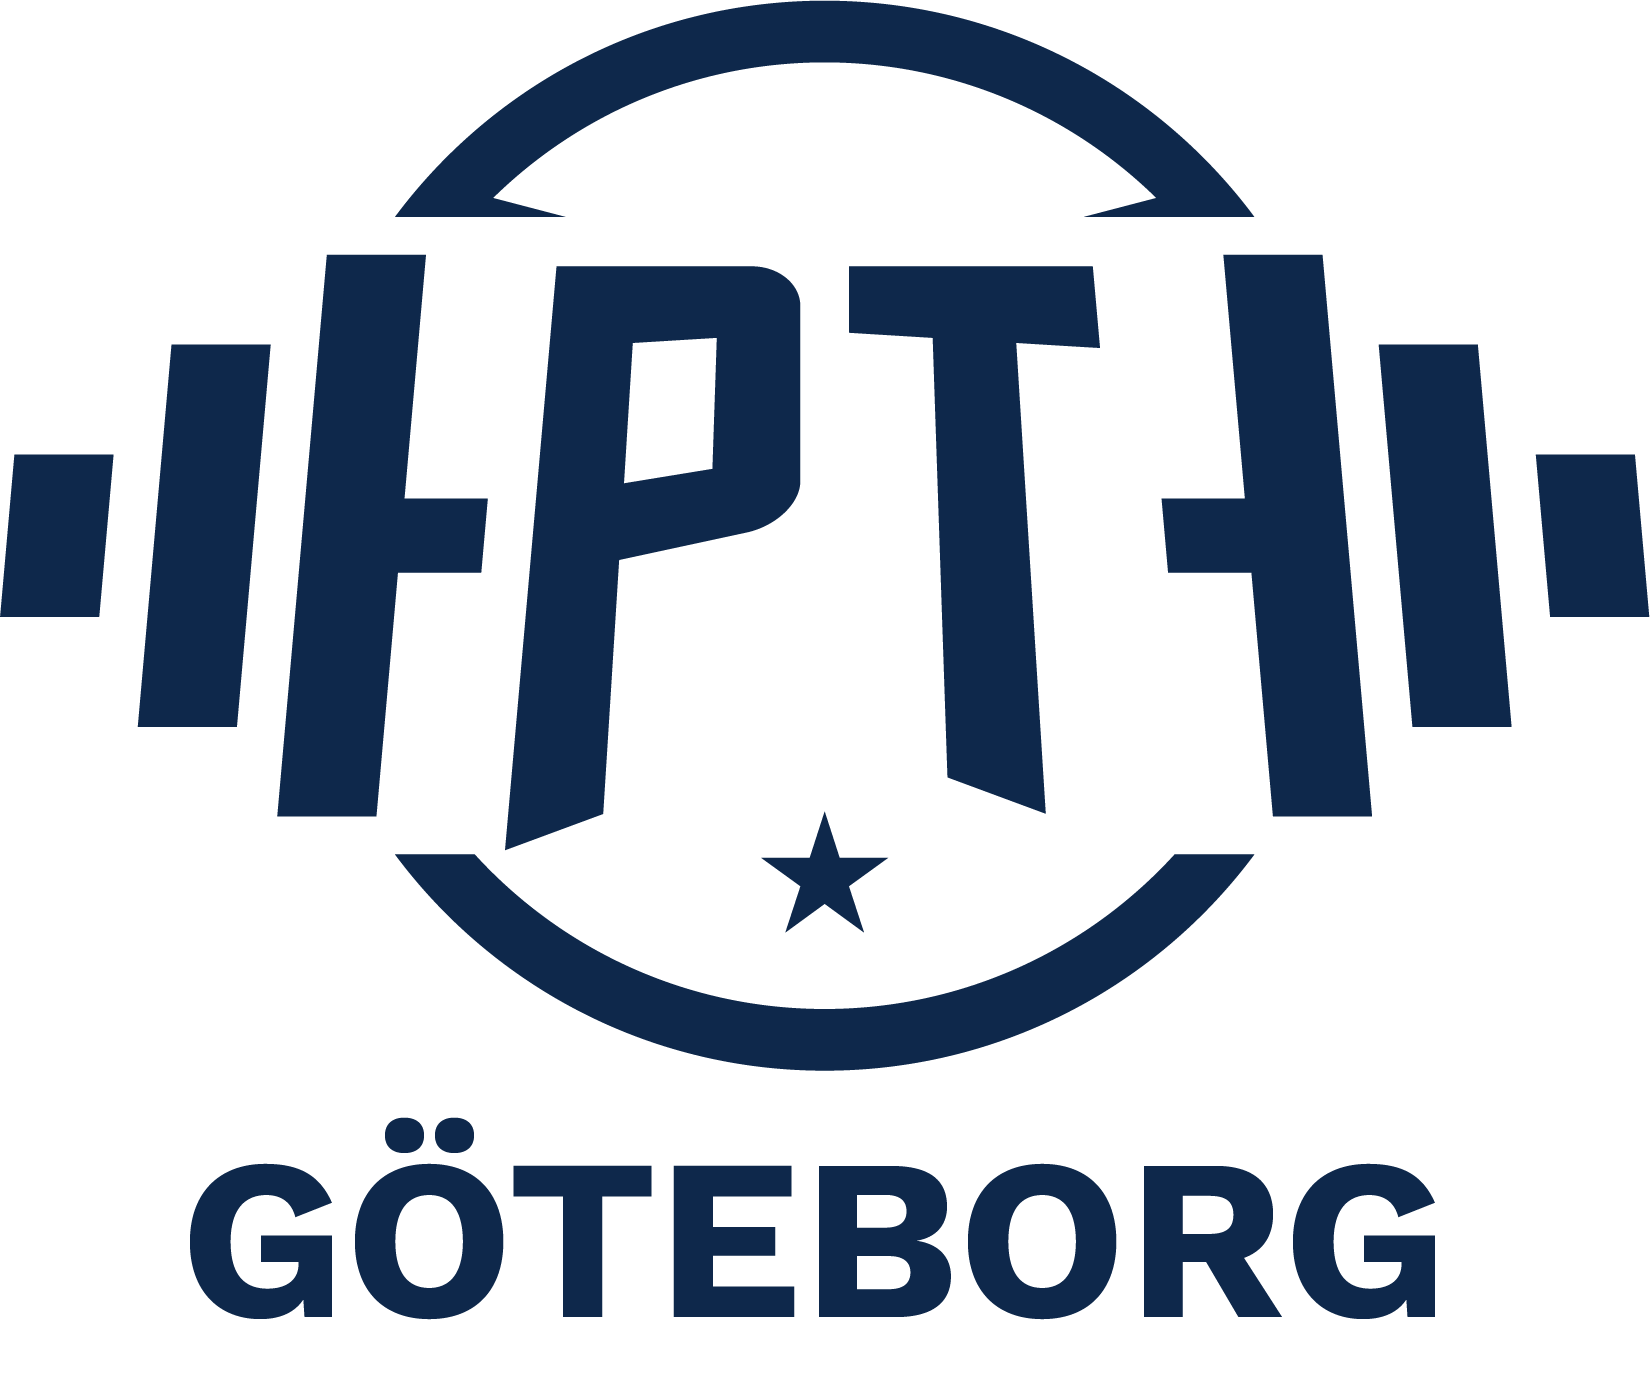 PT Göteborg